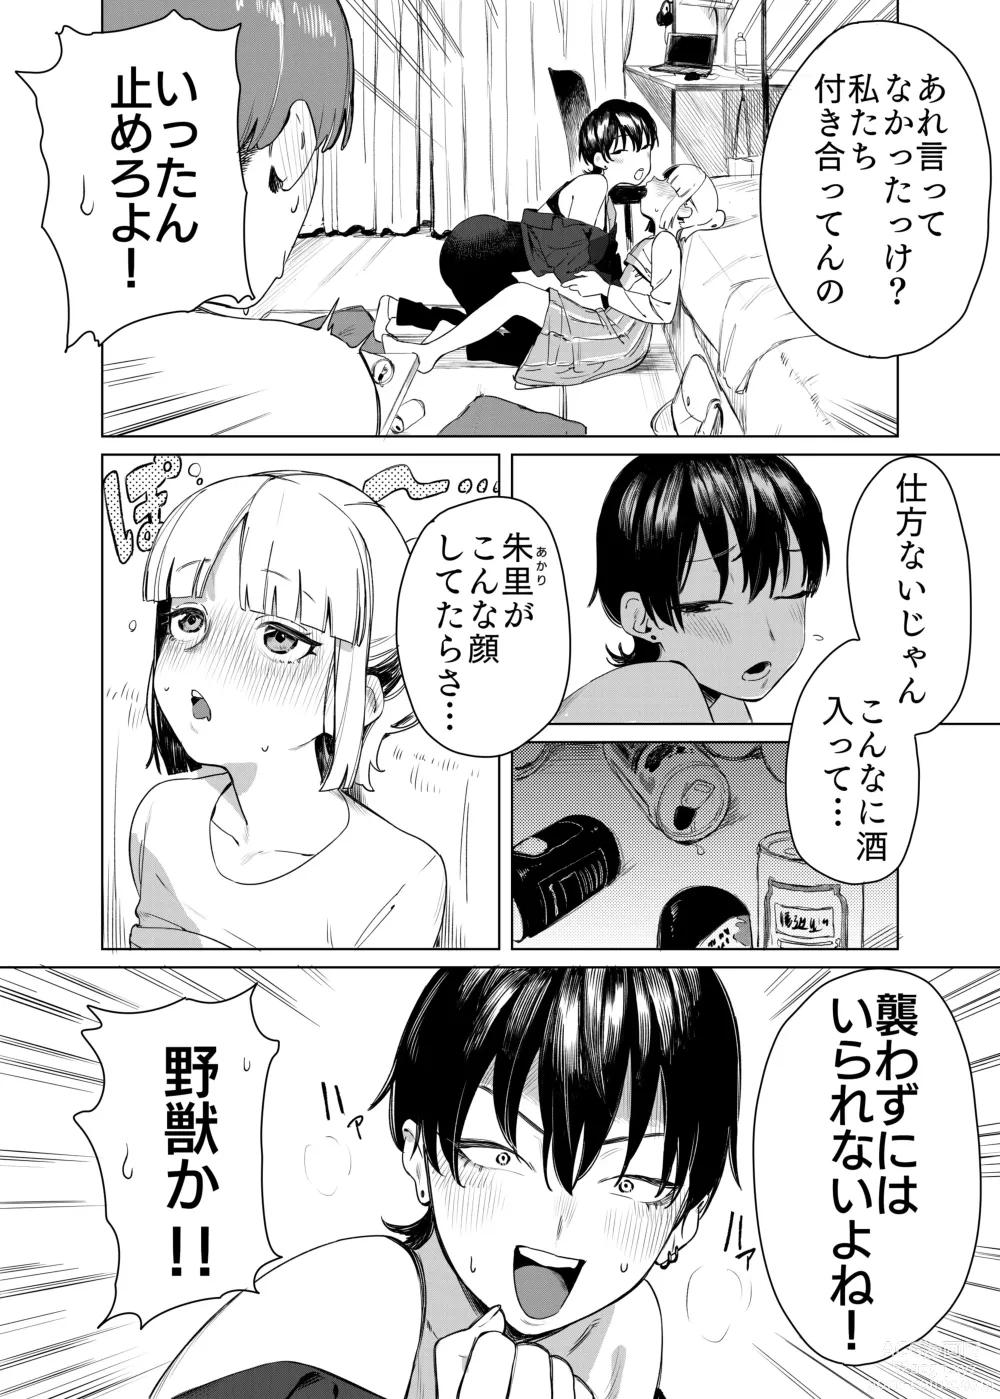 Page 3 of doujinshi Yuri ni Hasamaremashita.